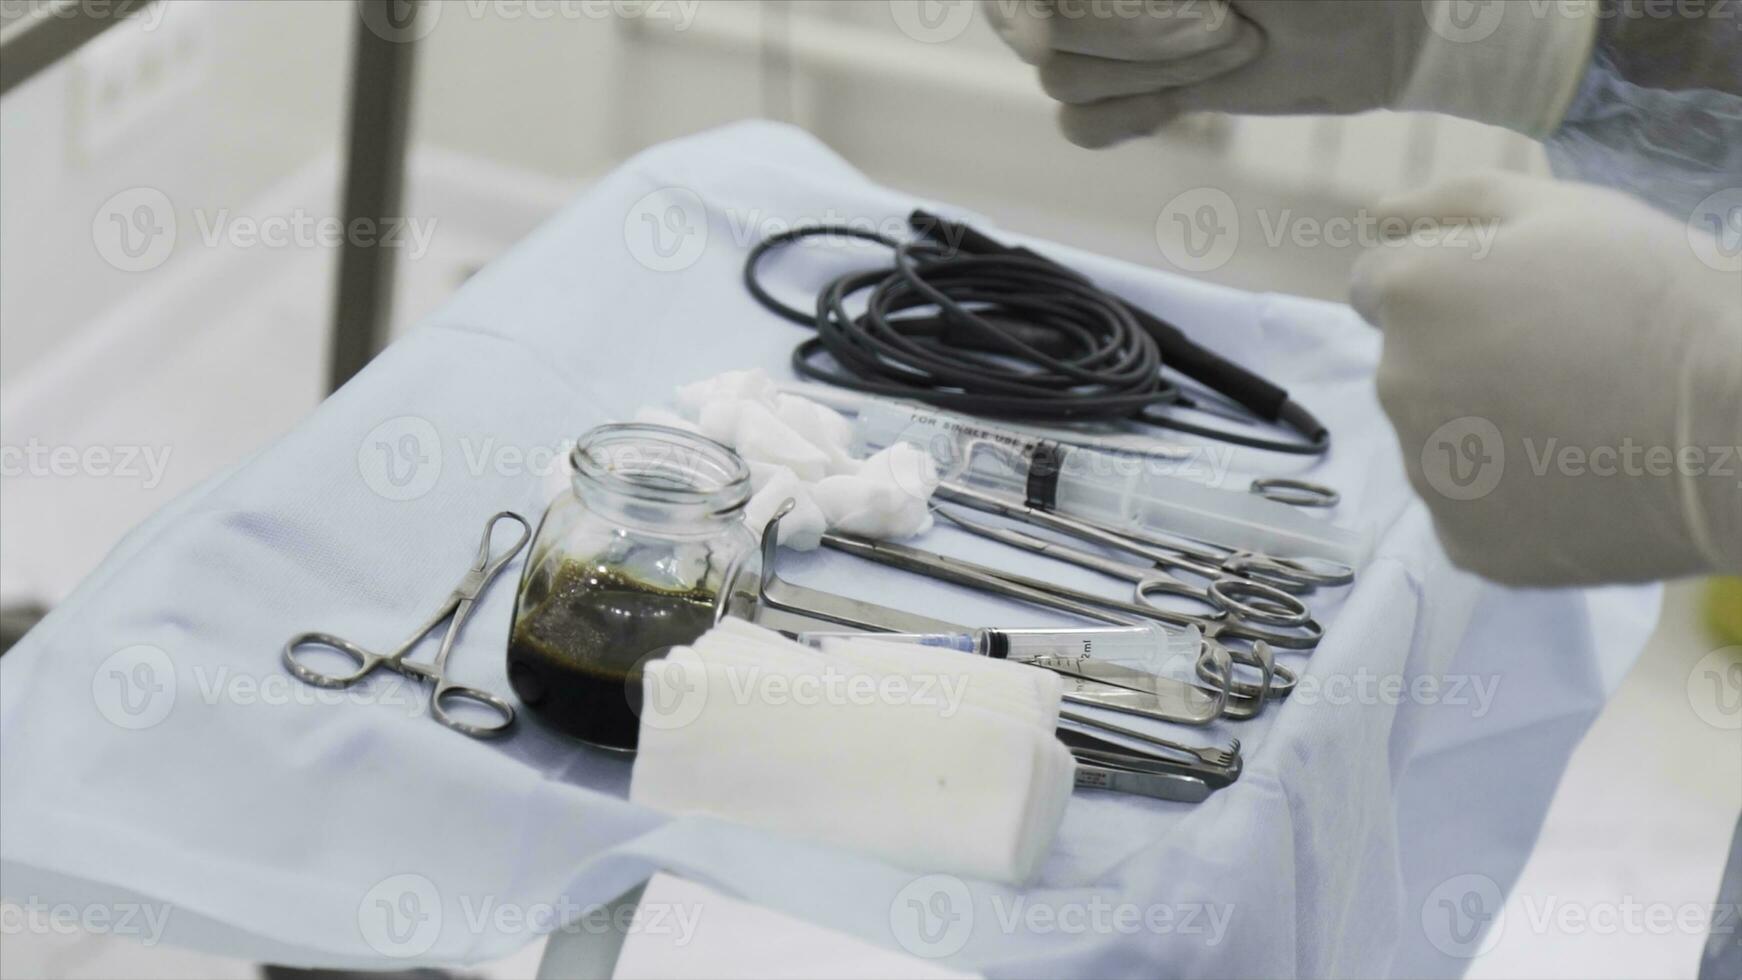 stänga upp av steril kirurgisk verktyg för laparoskopisk kirurgi. handling. verktyg för medicinsk kirurgi med de glas skål av jod, begrepp av hälsa och medicin. foto